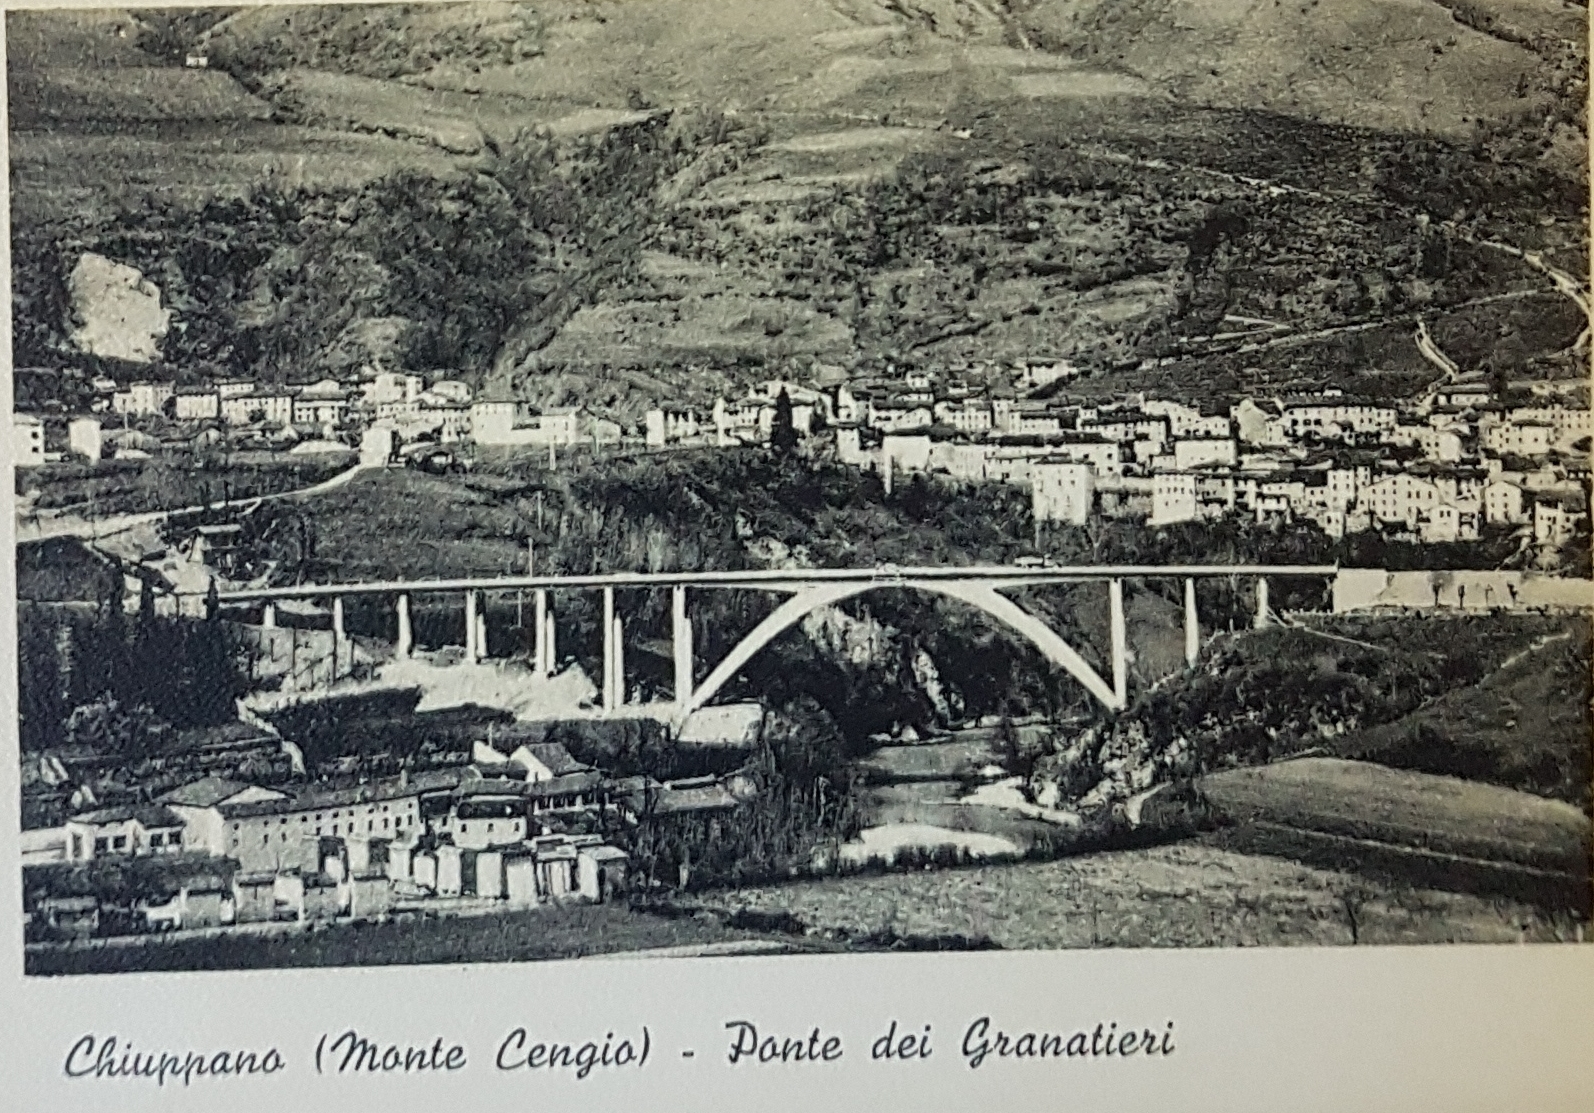 Chiuppano - Monte Cengio Ponte dei Granatieri